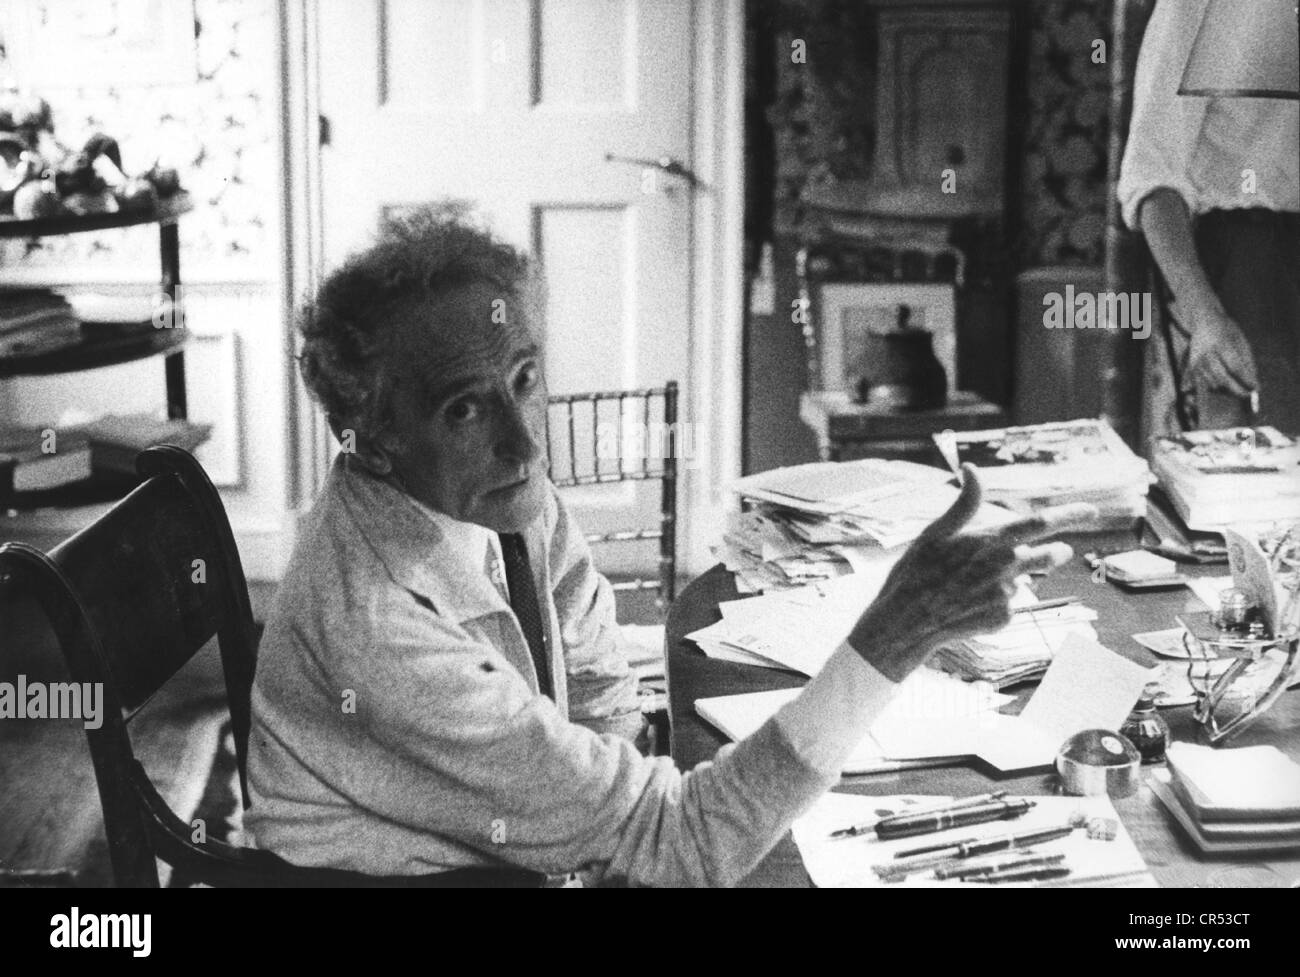 Cocteau, Jean, 5.7.1889 - 11. 10.1963, französischer Autor/Schriftsteller,  Regisseur und Grafiker, halbe Länge, an seinem Tisch sitzend, 1963  Stockfotografie - Alamy